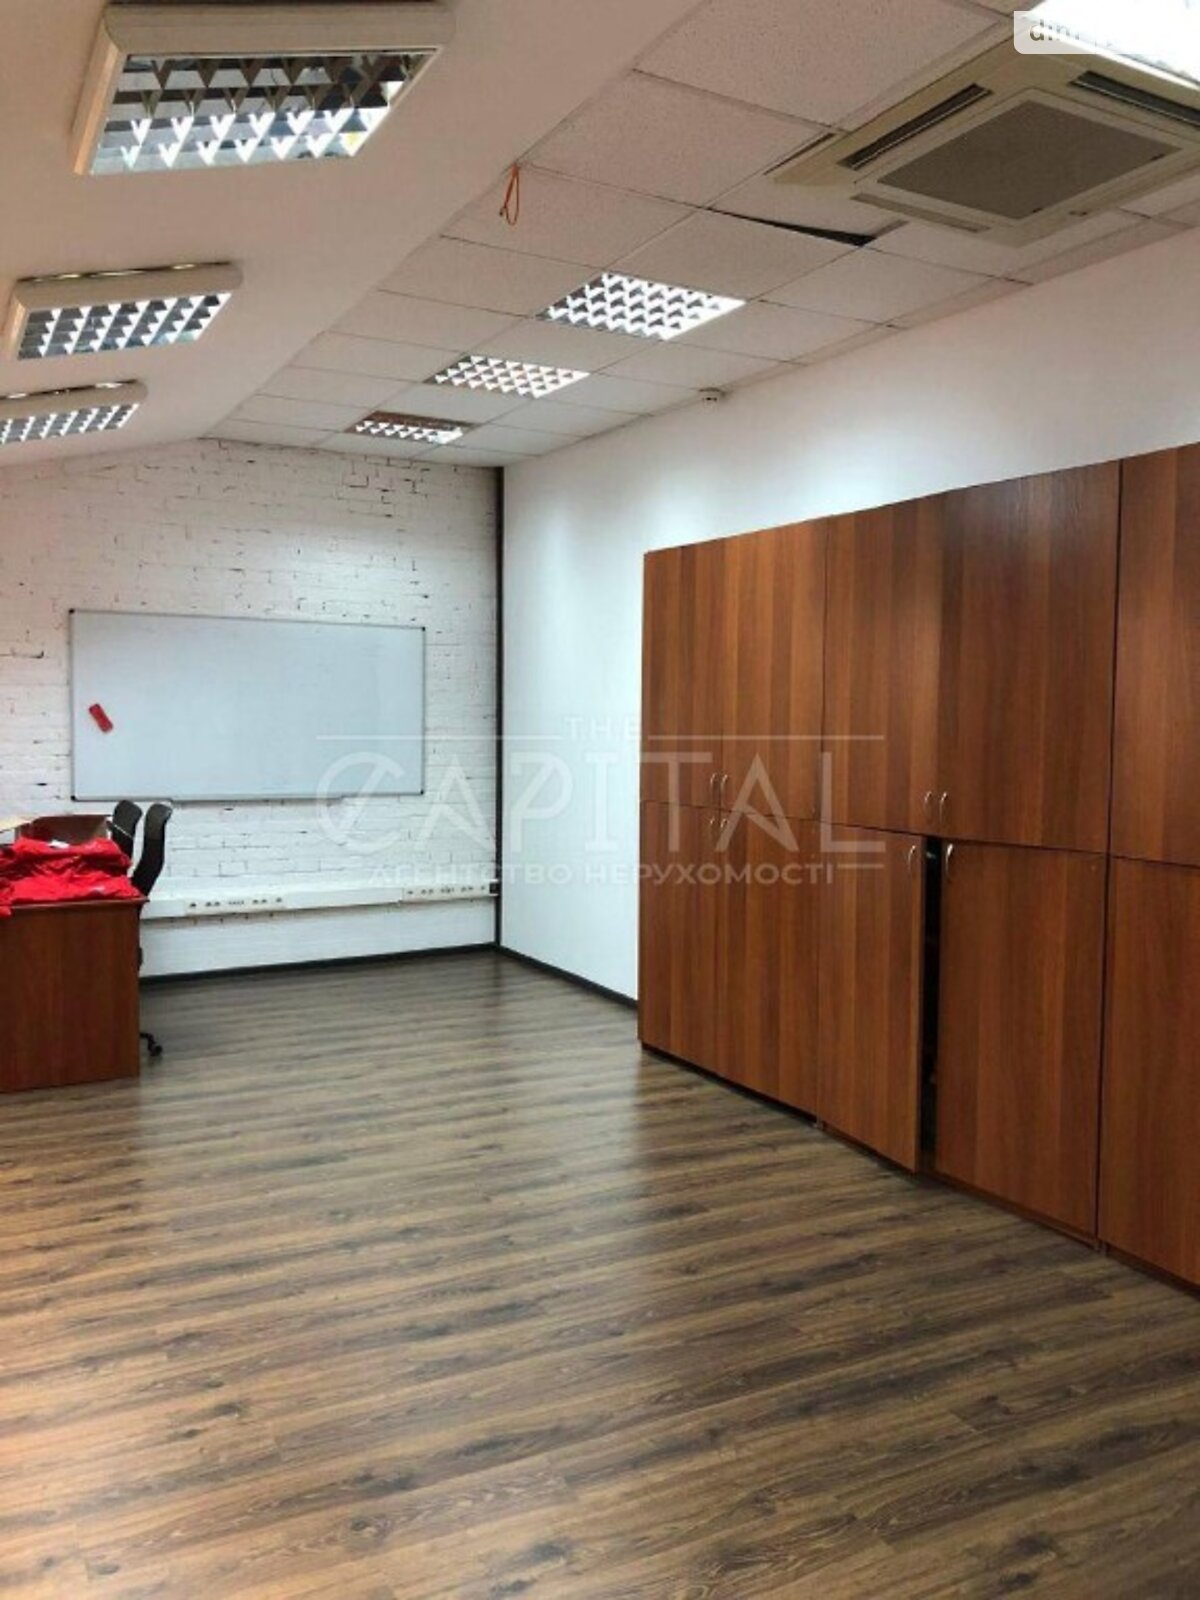 Аренда офисного помещения в Киеве, Рыбальская улица 22, помещений - 4, этаж - 3 фото 1